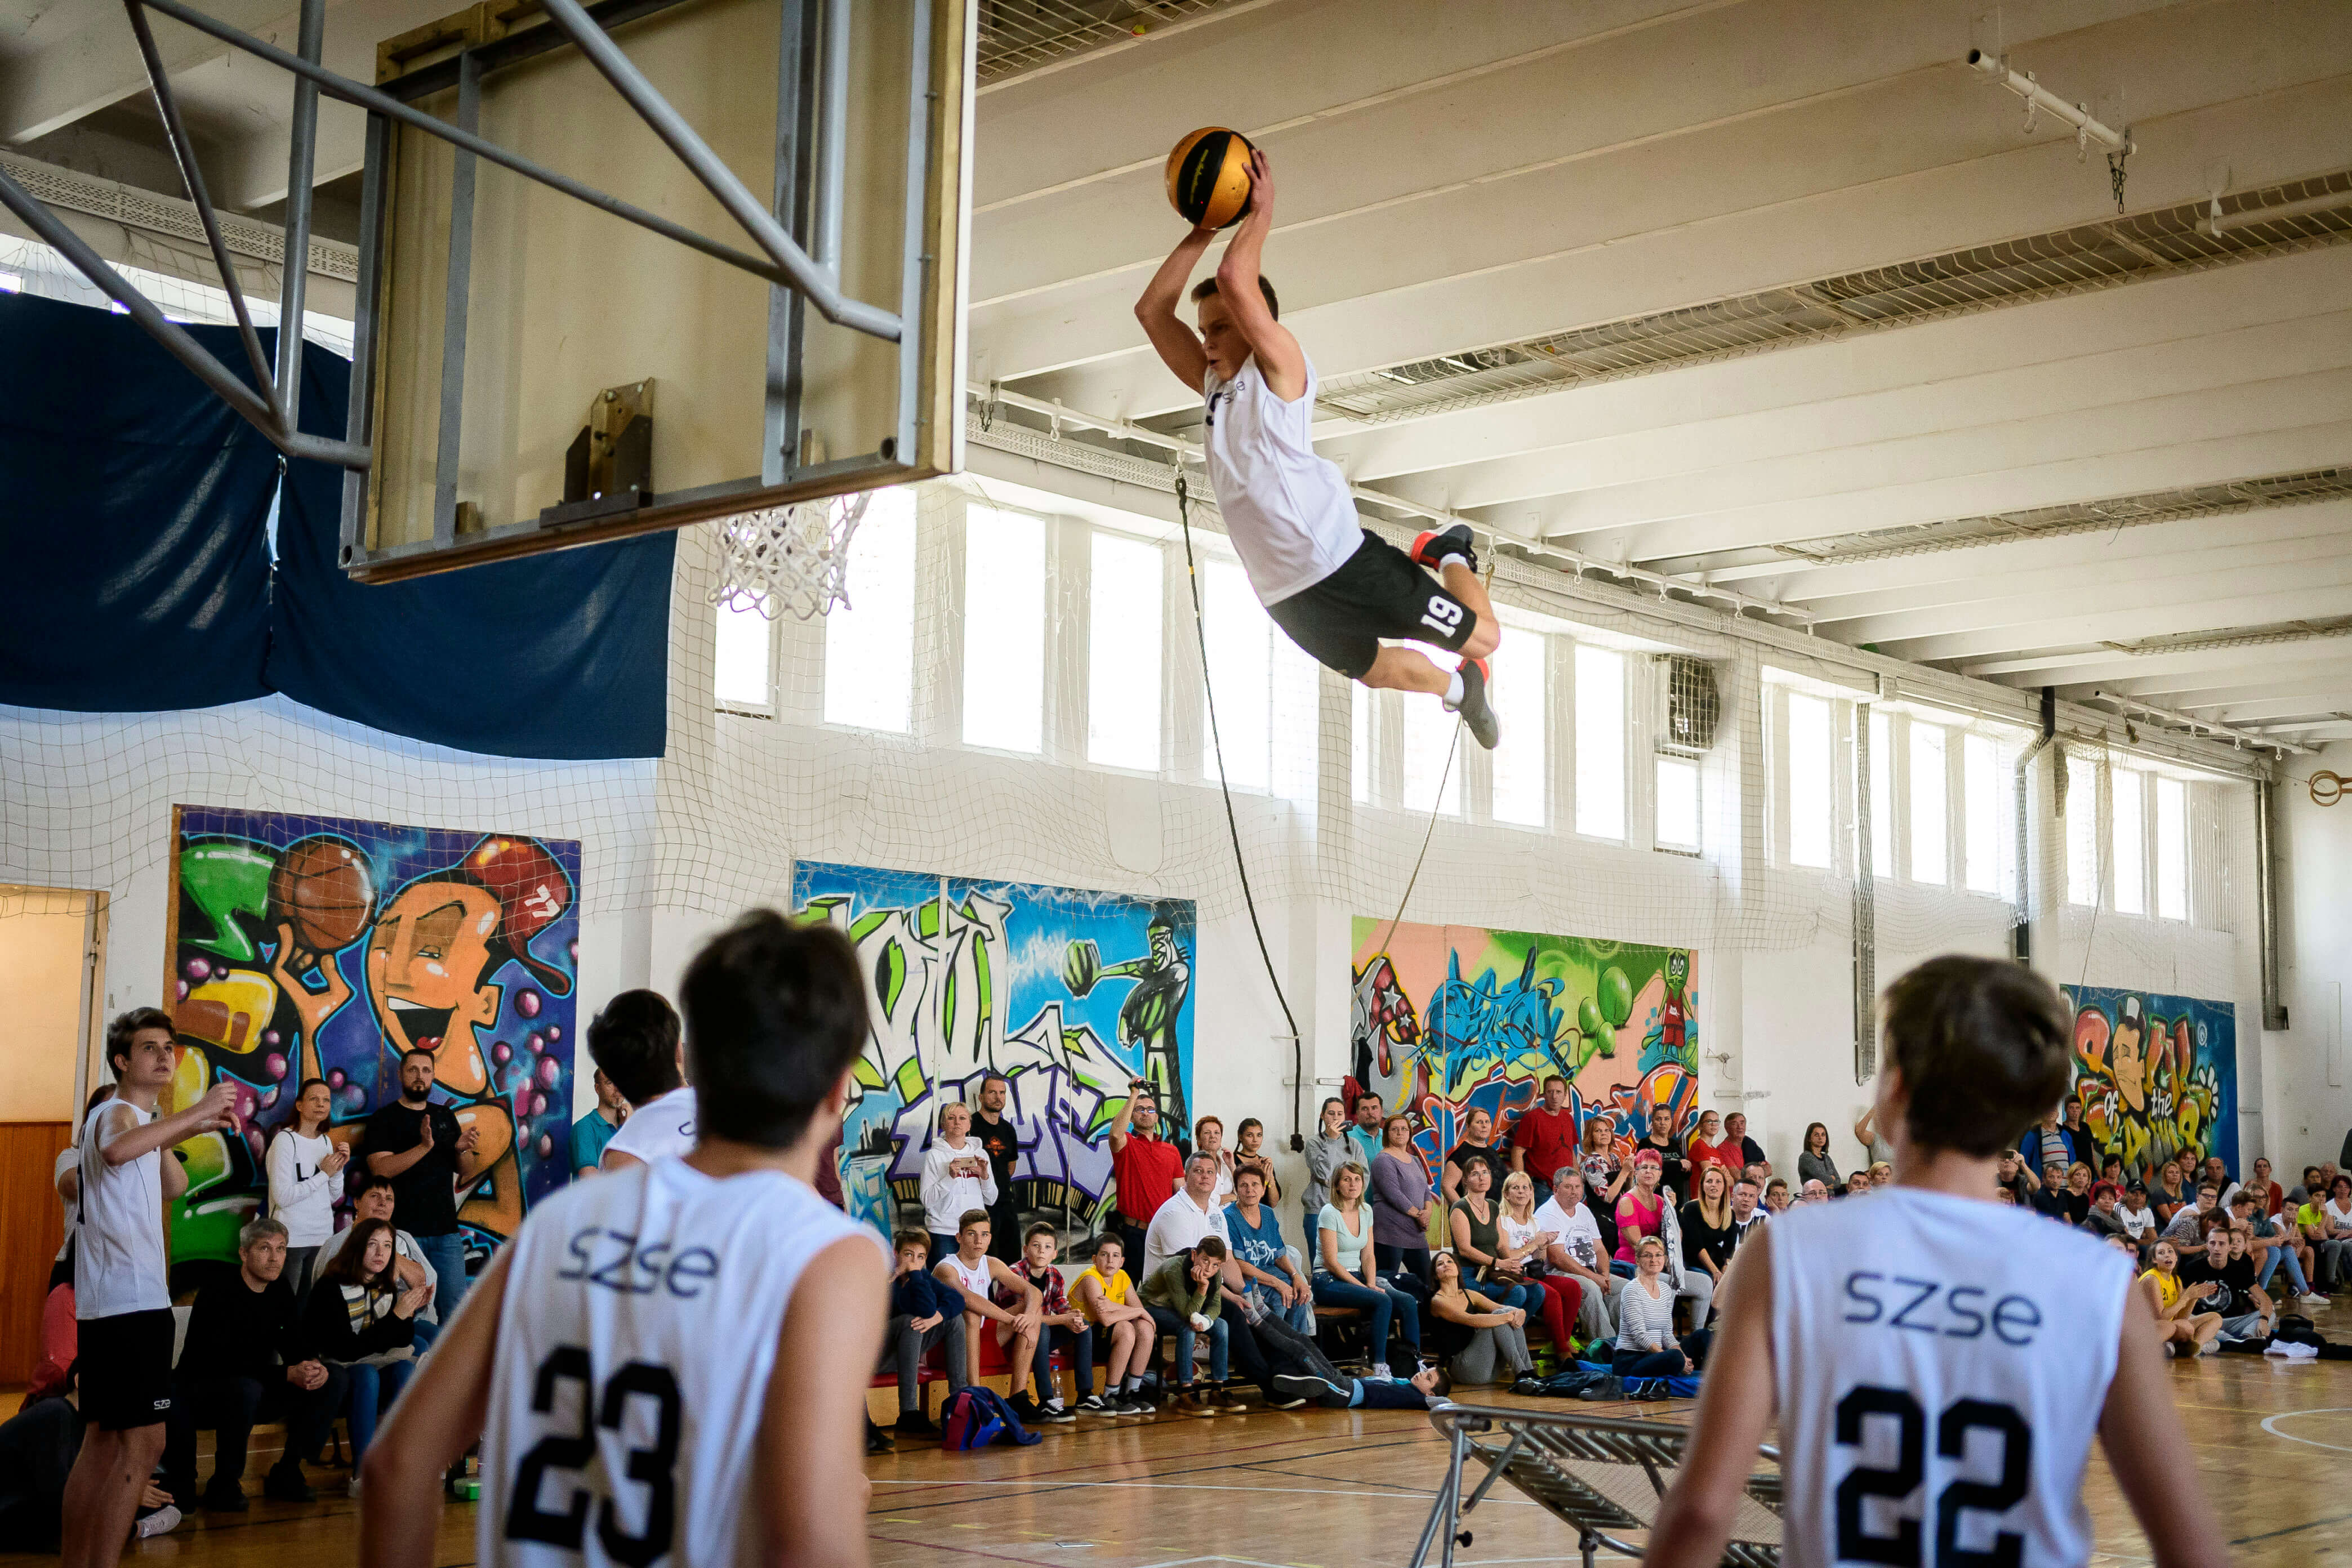 A világon elsőként Magyarországon rendeznek bajnokságot akrobatikus kosárlabdázásban